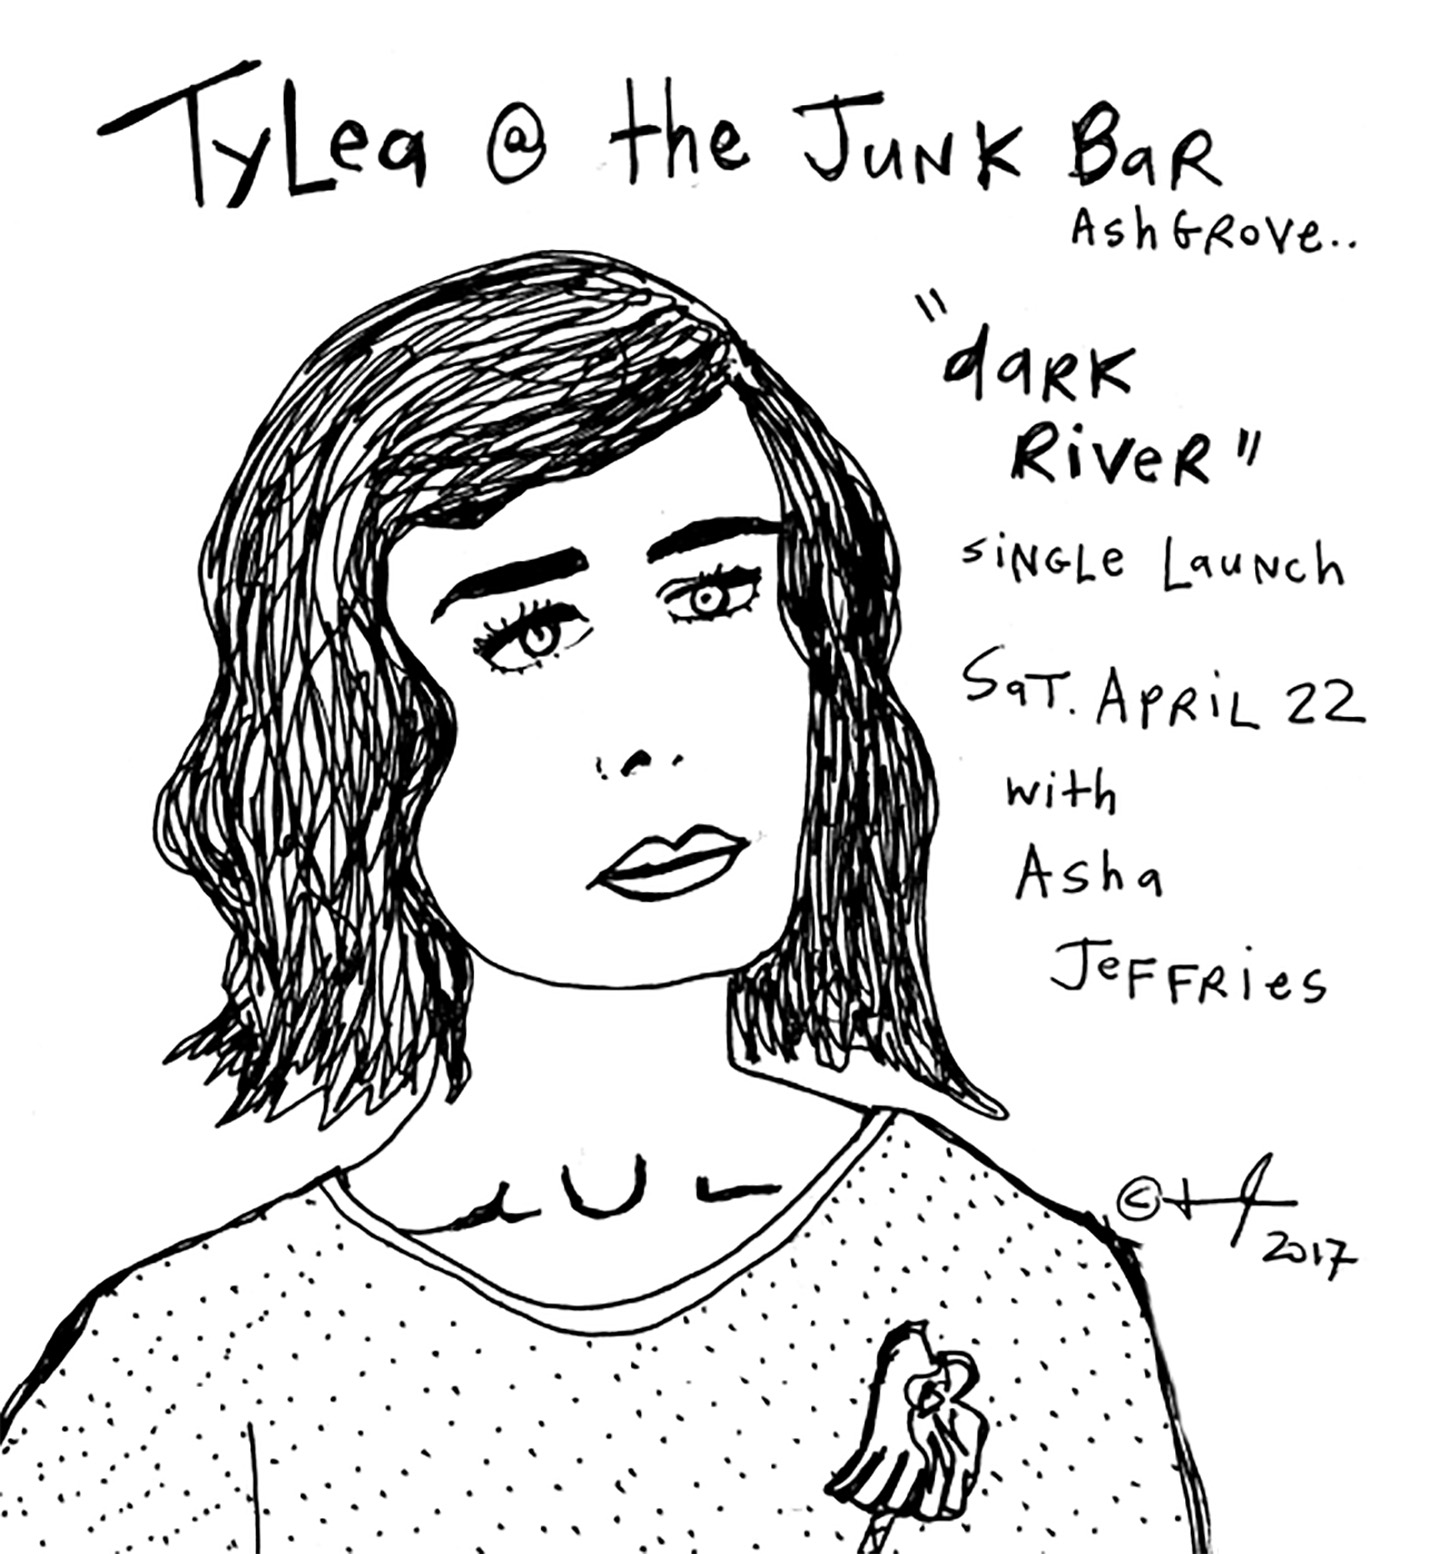 The Junk Bar @ Saturday April 22, 2017